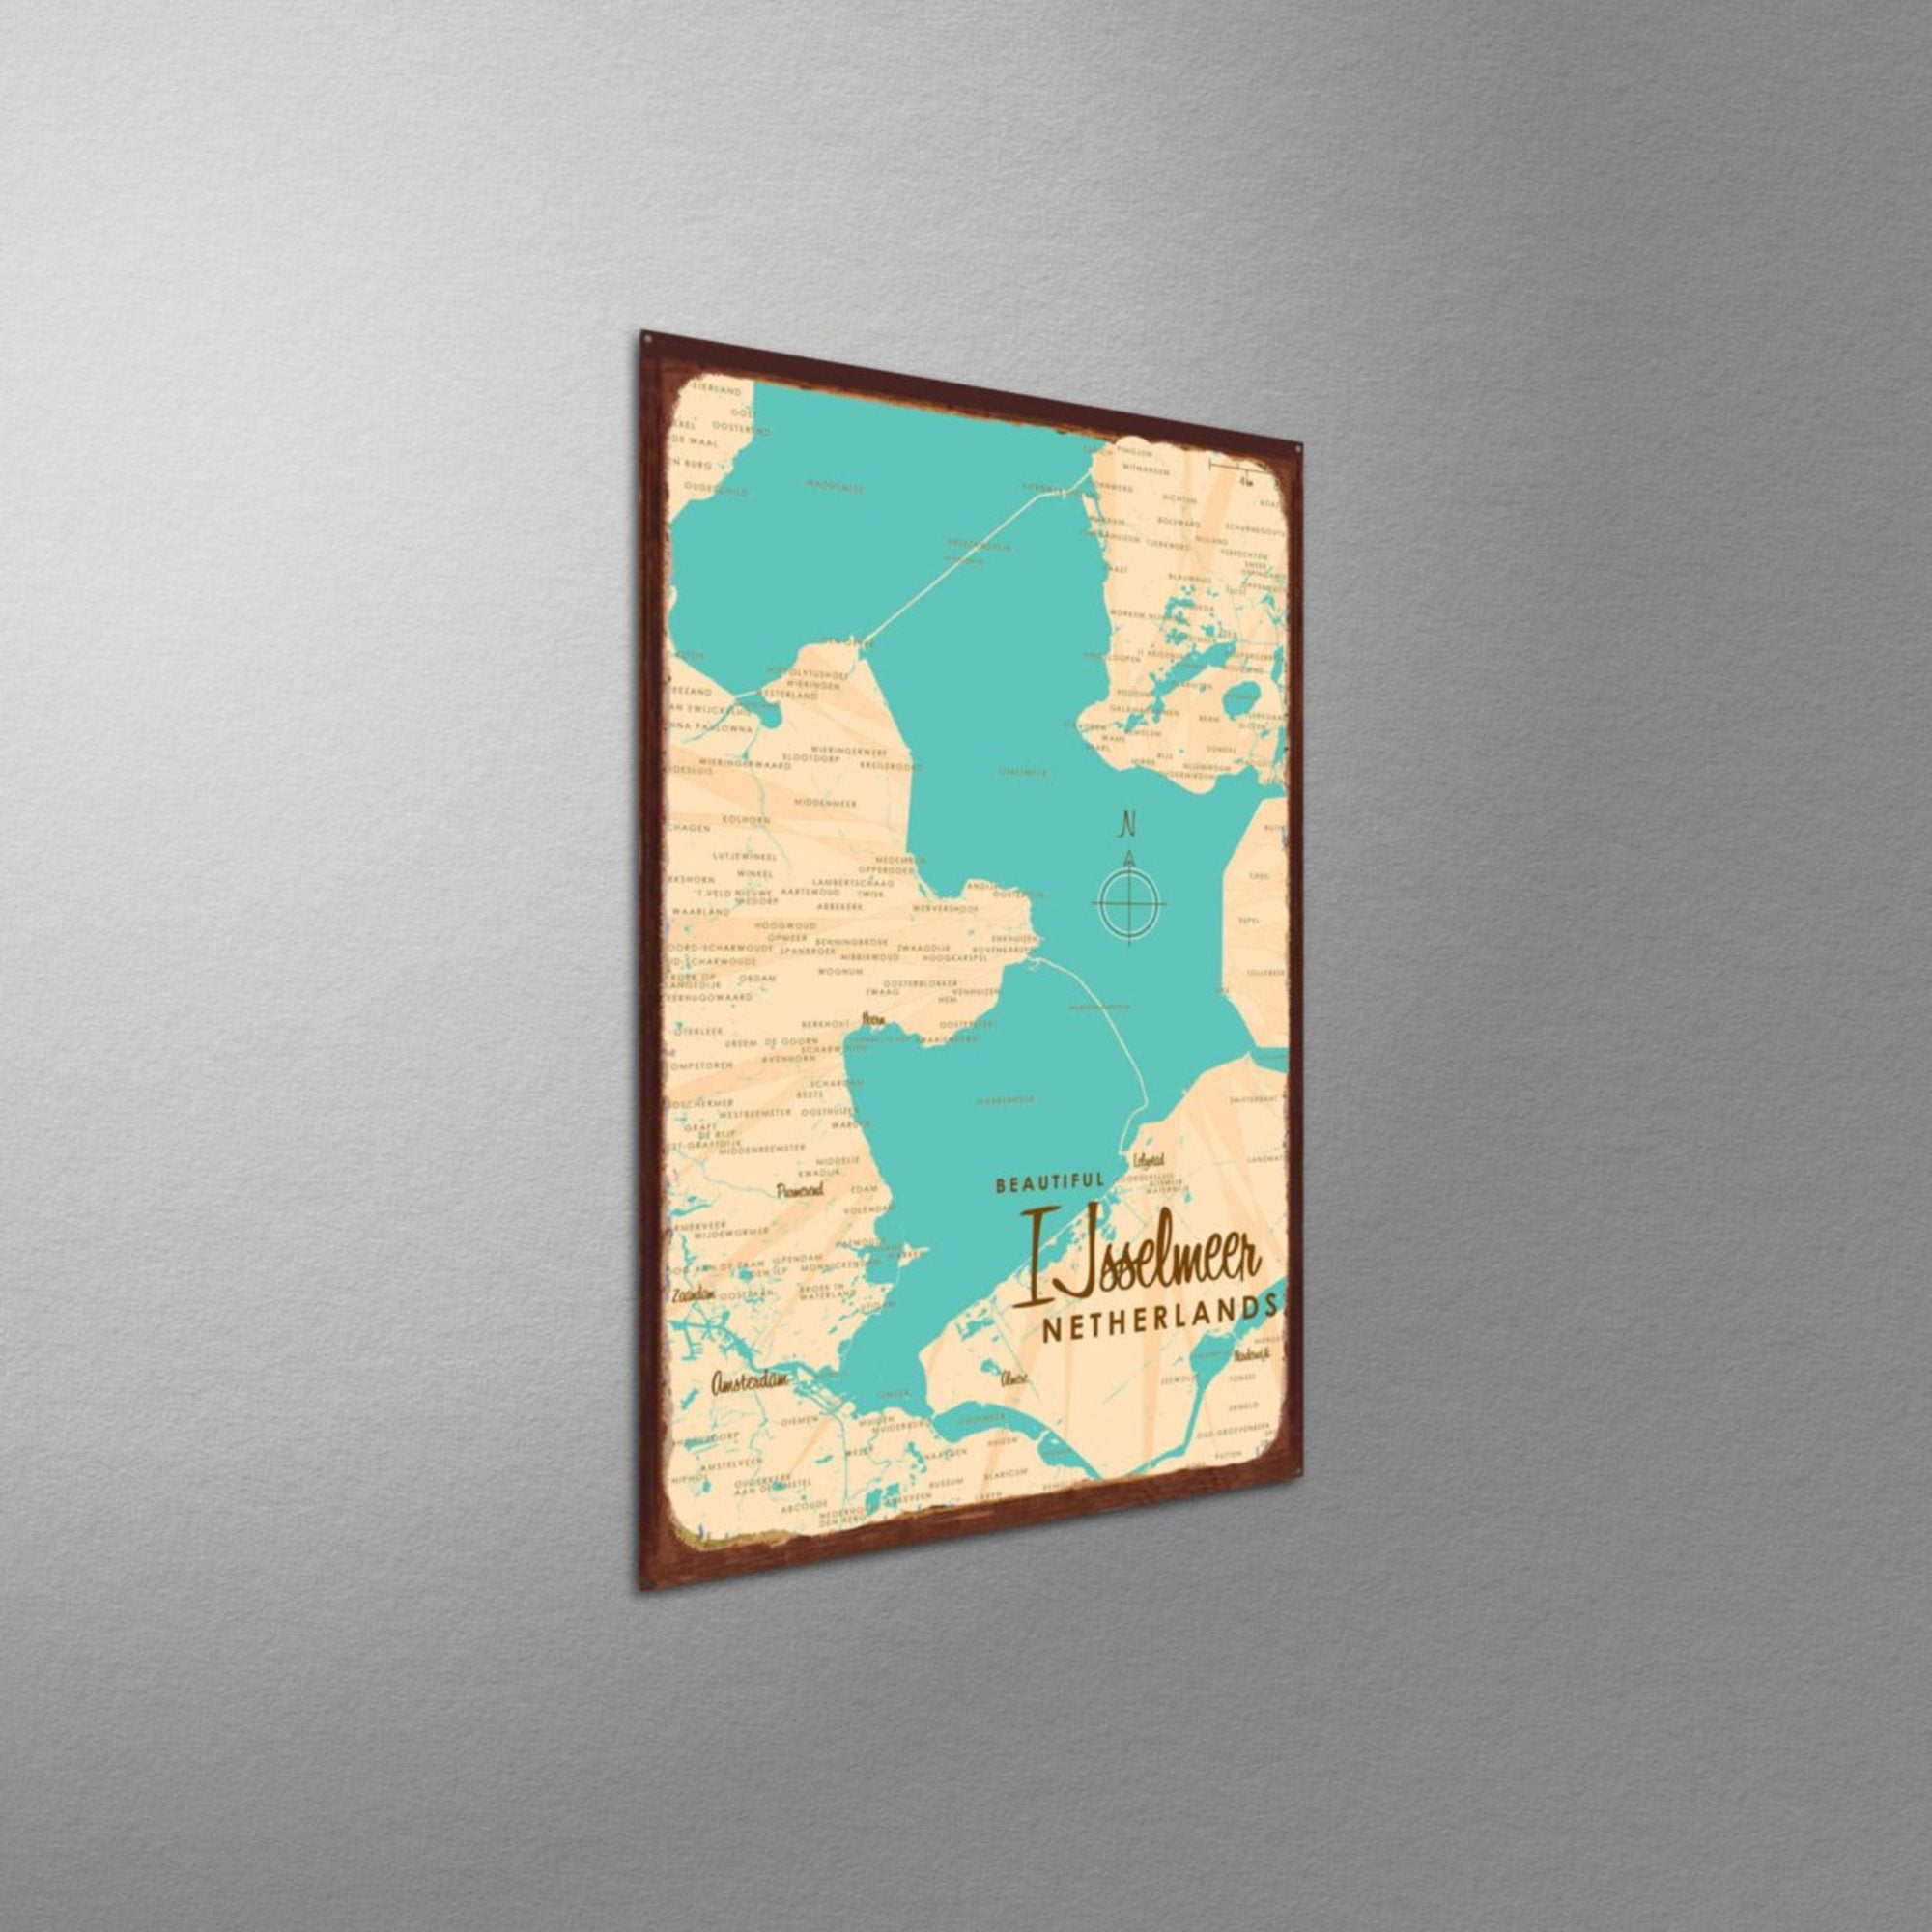 IJsselmeer Netherlands, Rustic Metal Sign Map Art